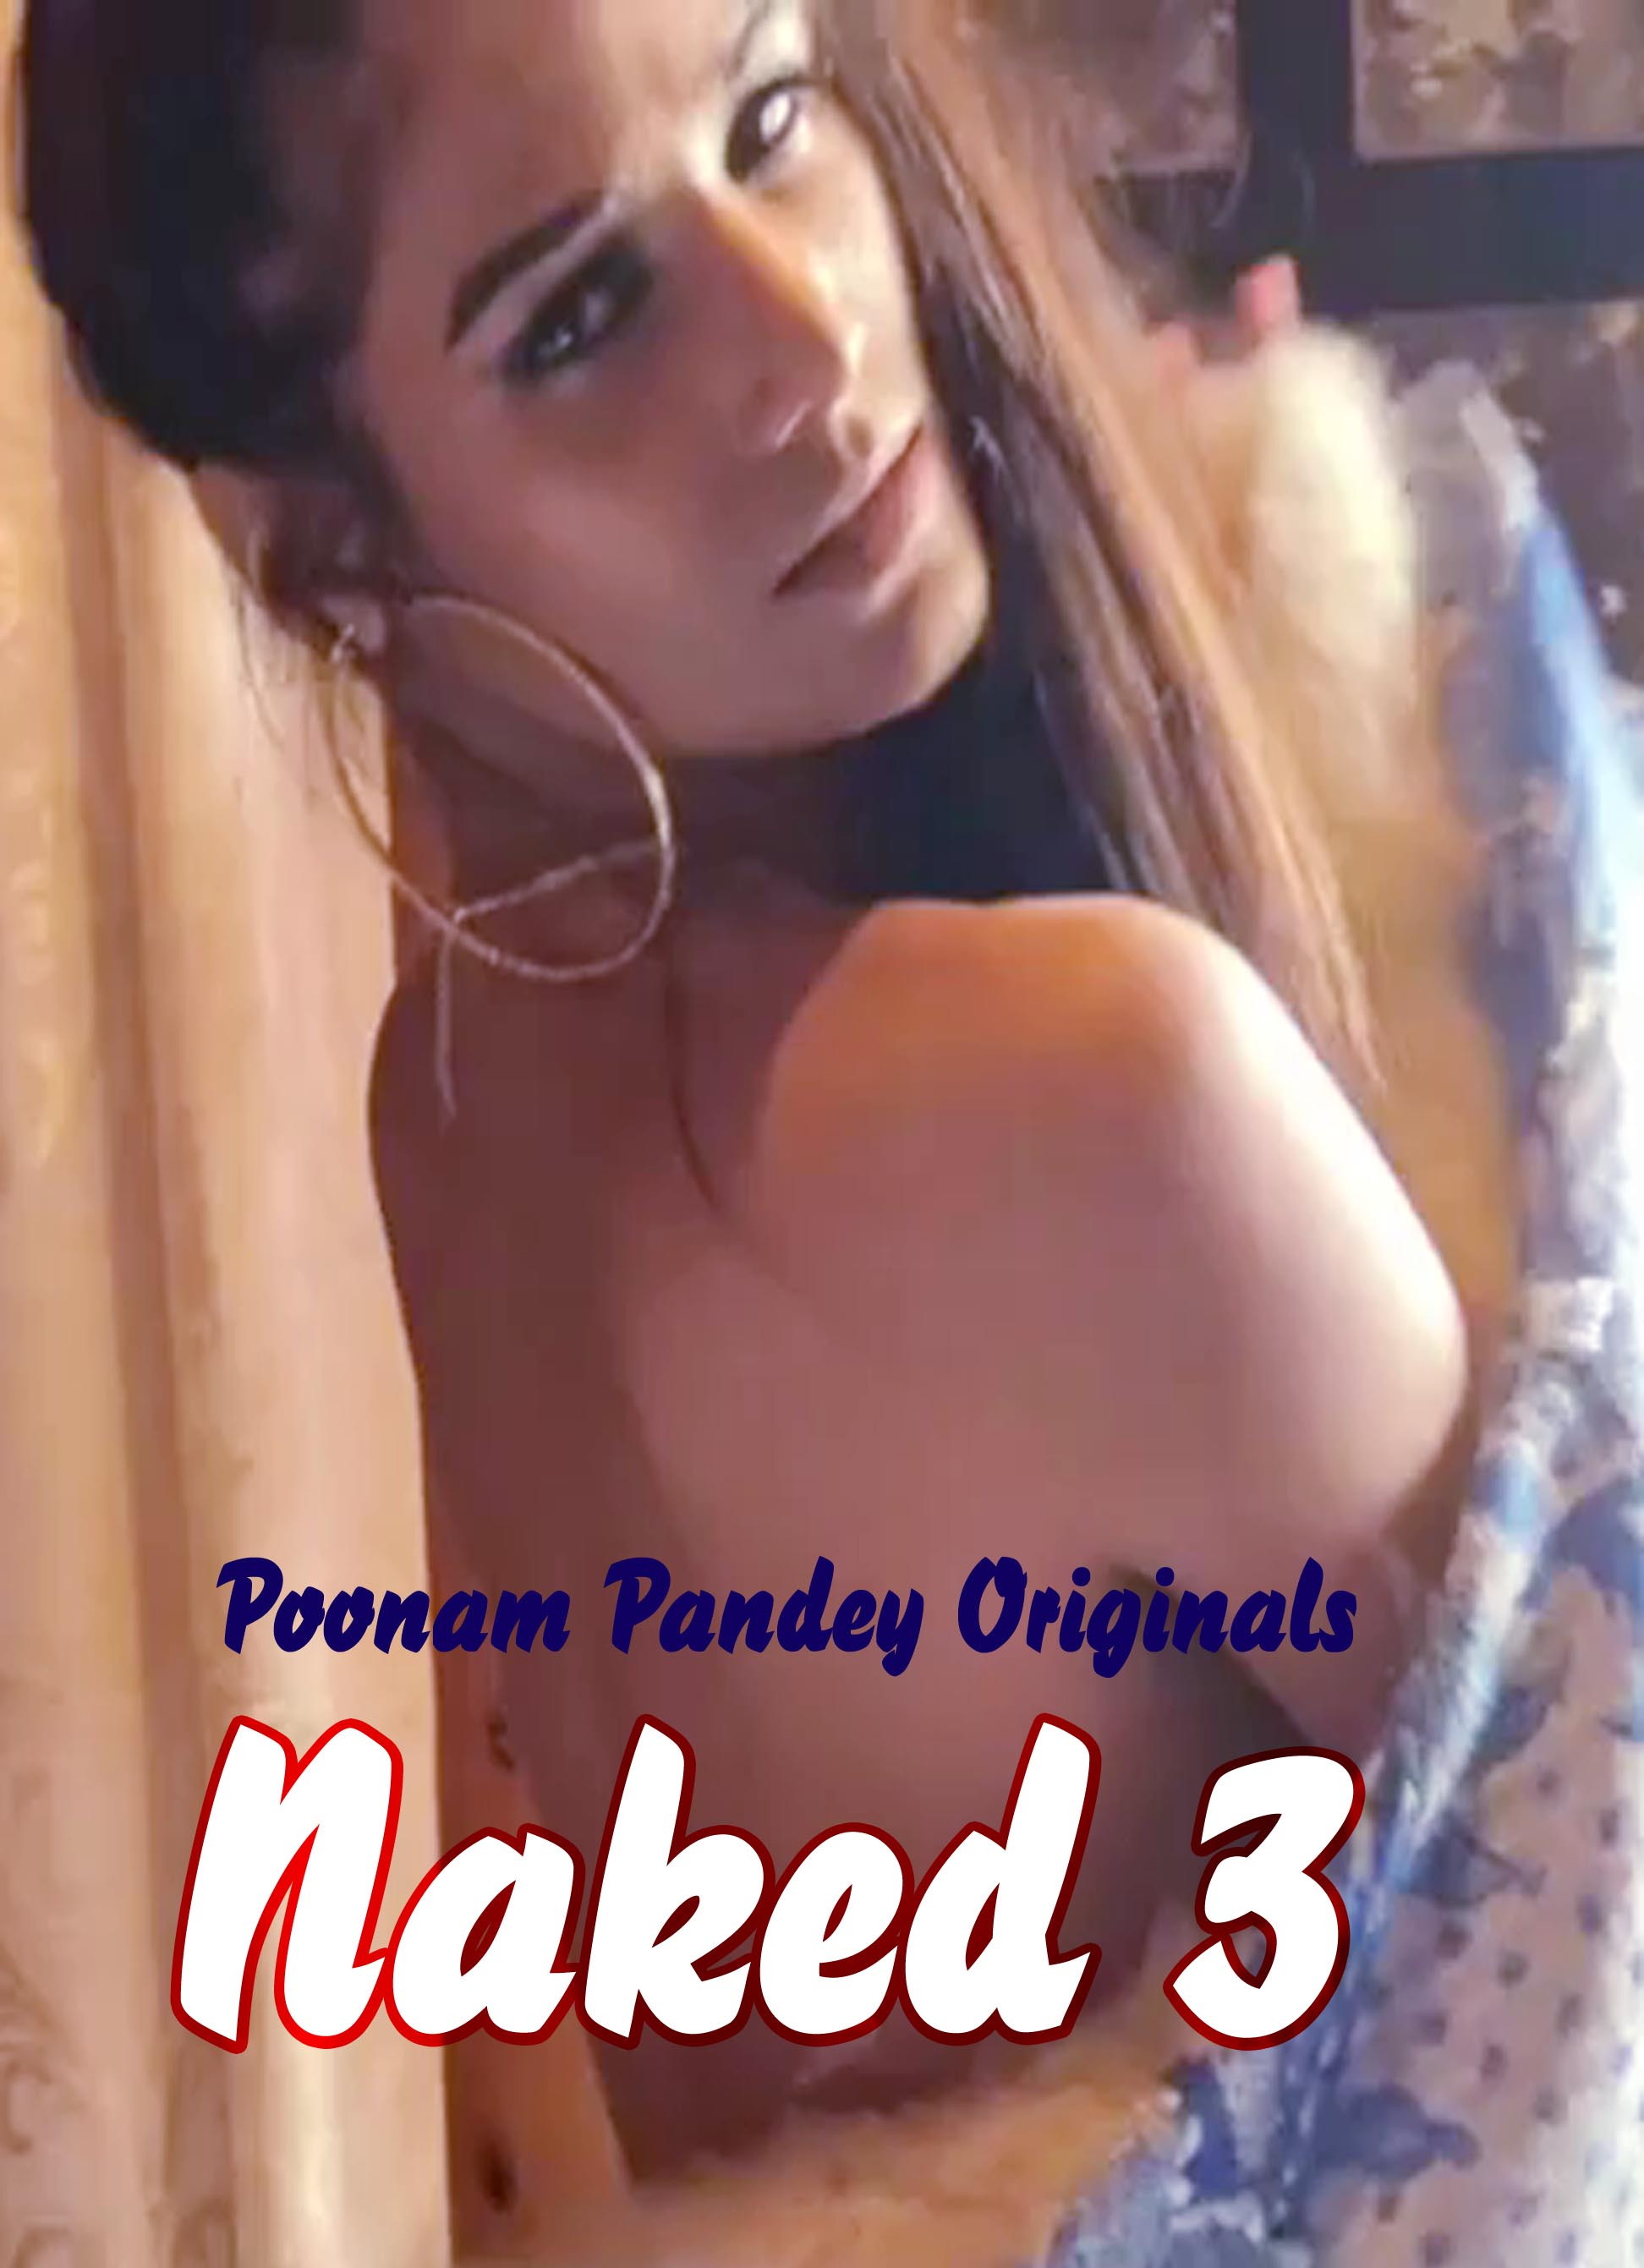 Naked 3 (2020) Poonam Pandey (2020)